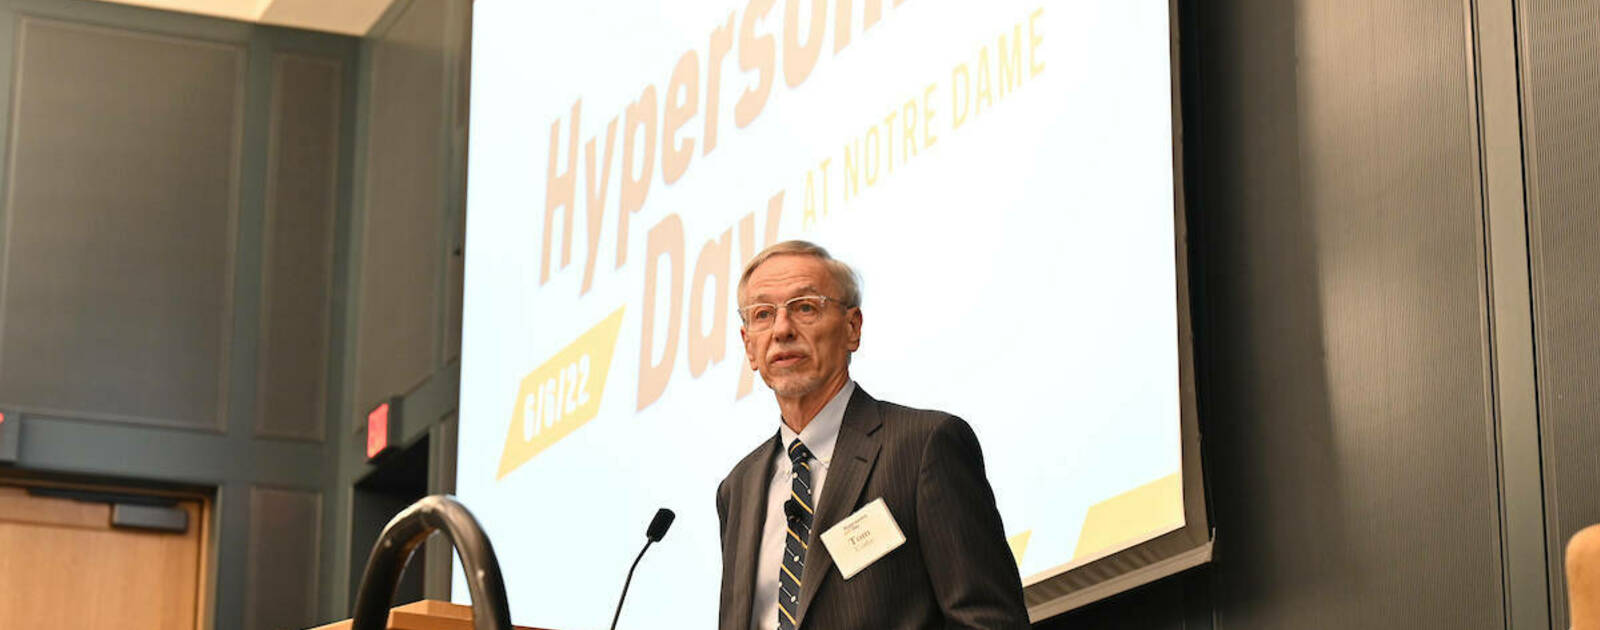 hypersonics.nd.edu